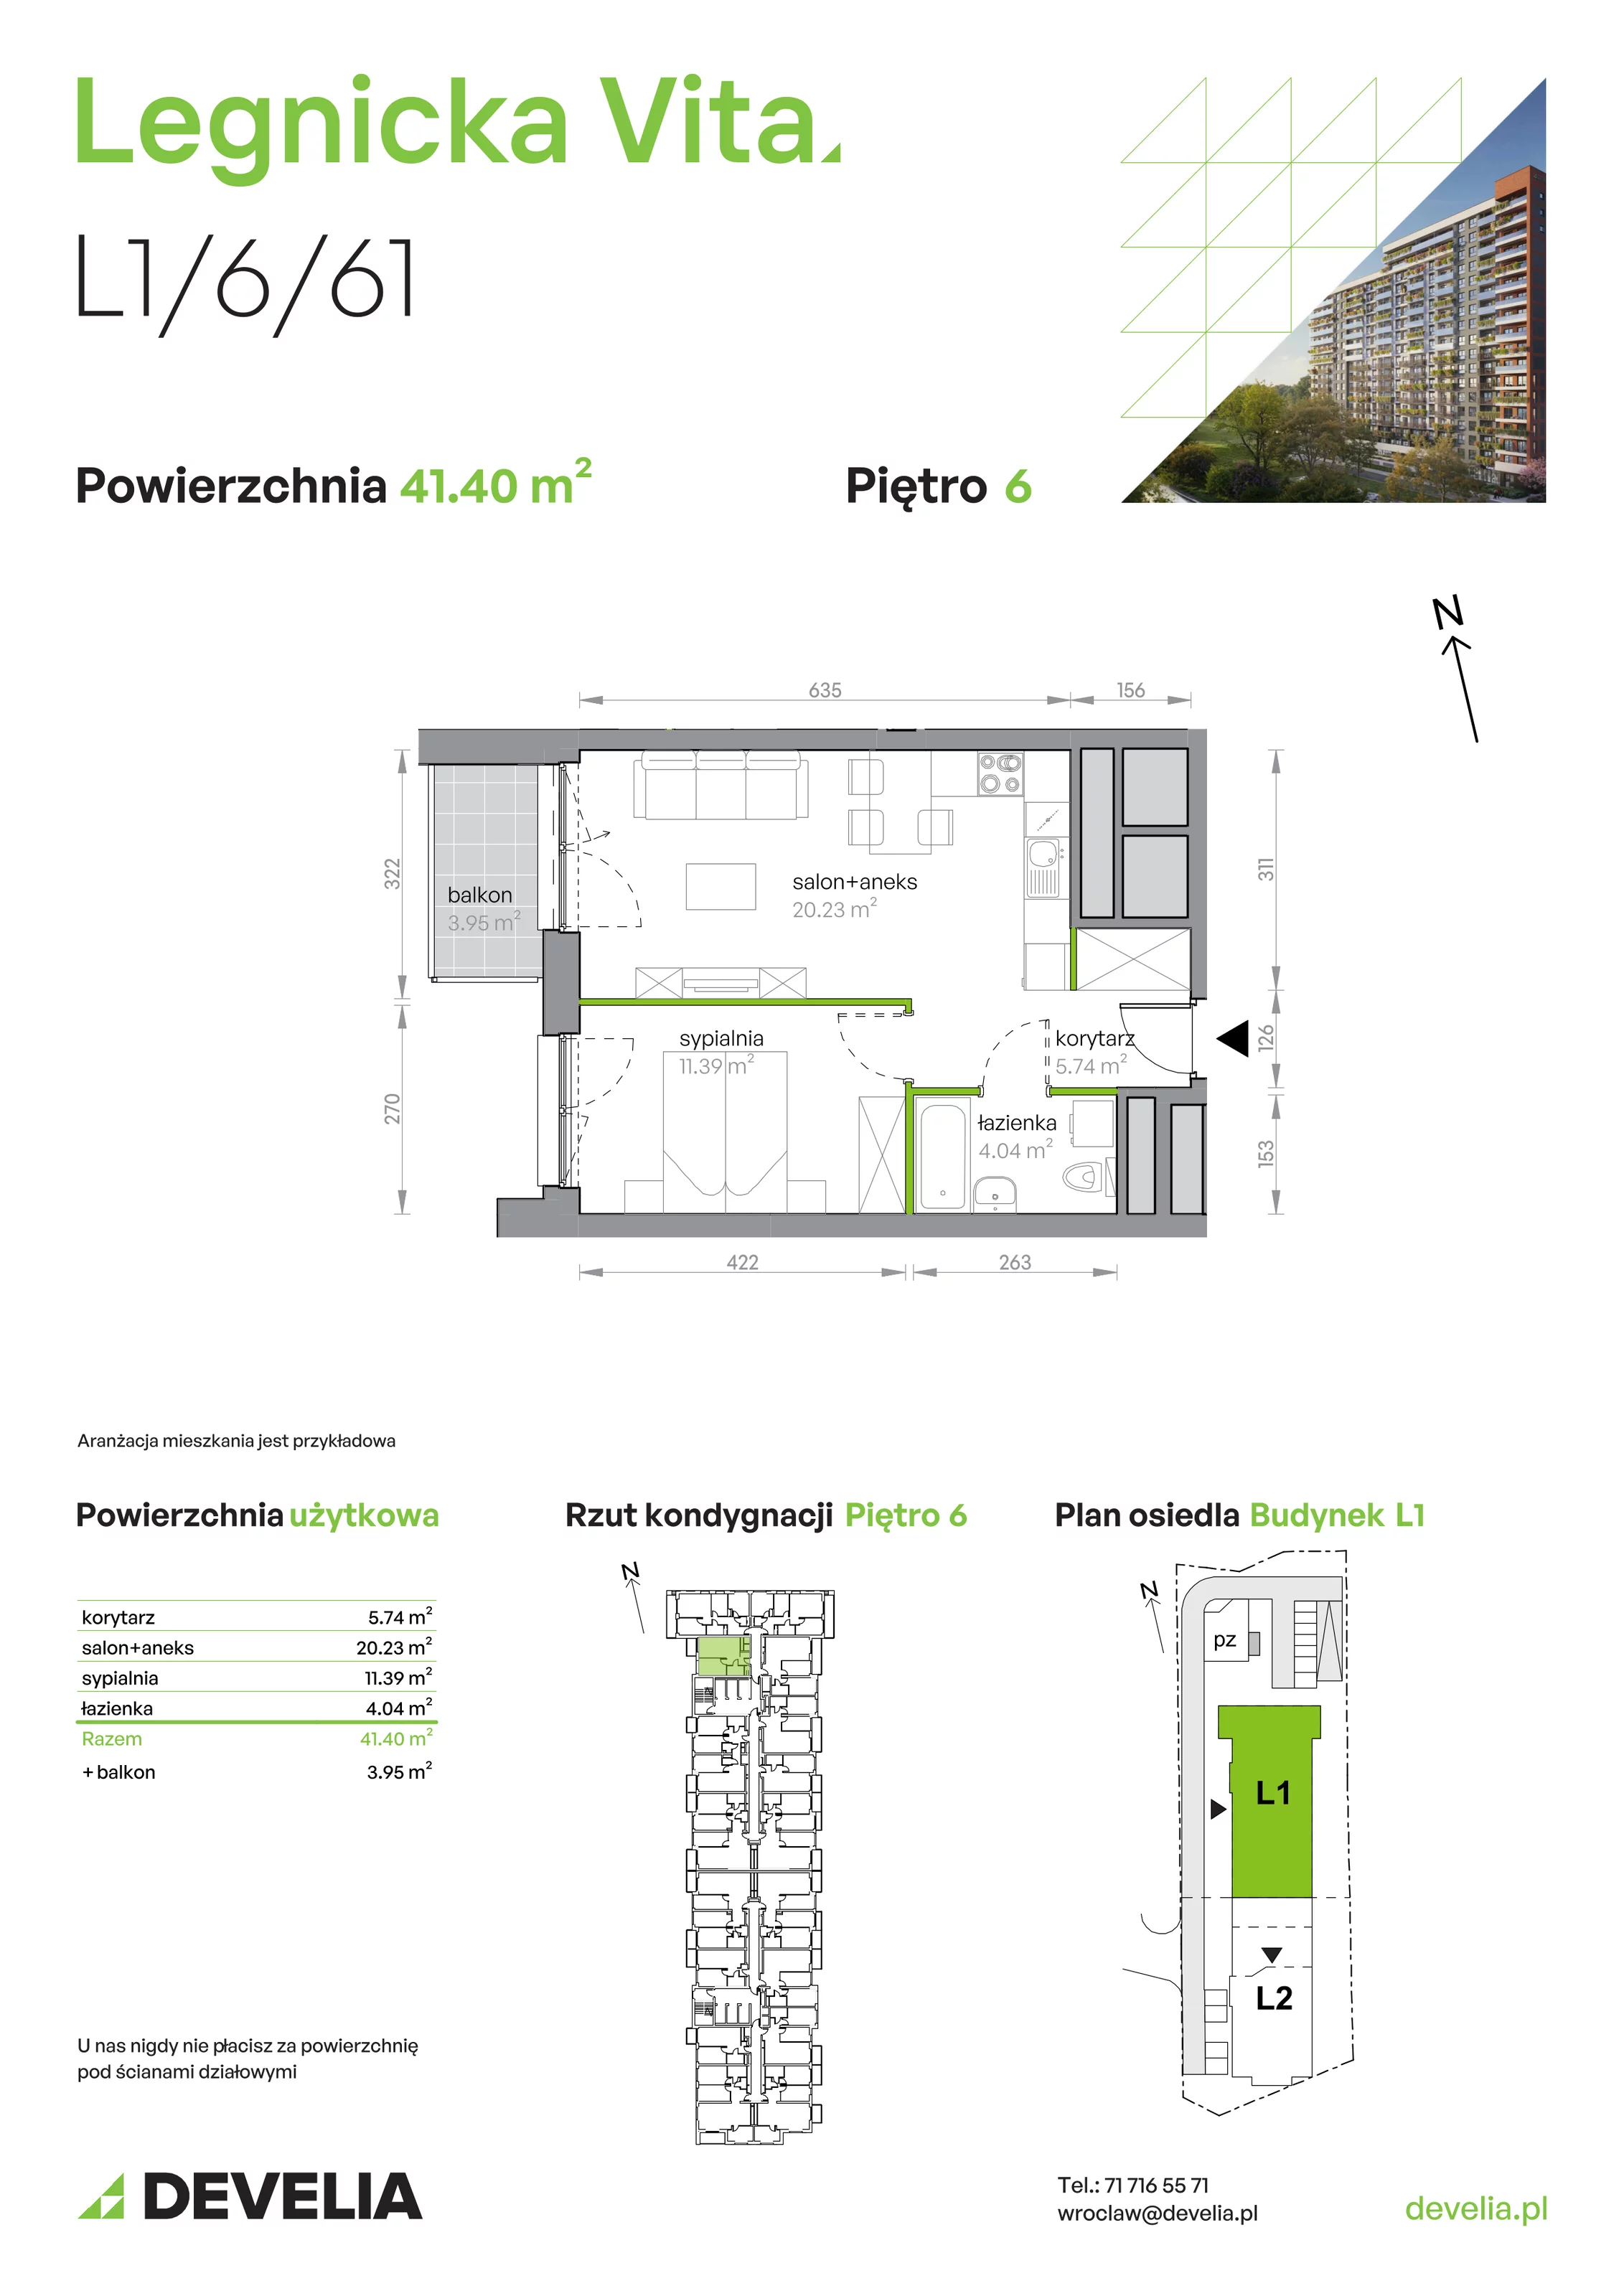 Mieszkanie 41,40 m², piętro 6, oferta nr L1/6/61, Legnicka Vita, Wrocław, Gądów-Popowice Południowe, Popowice, ul. Legnicka 52 A